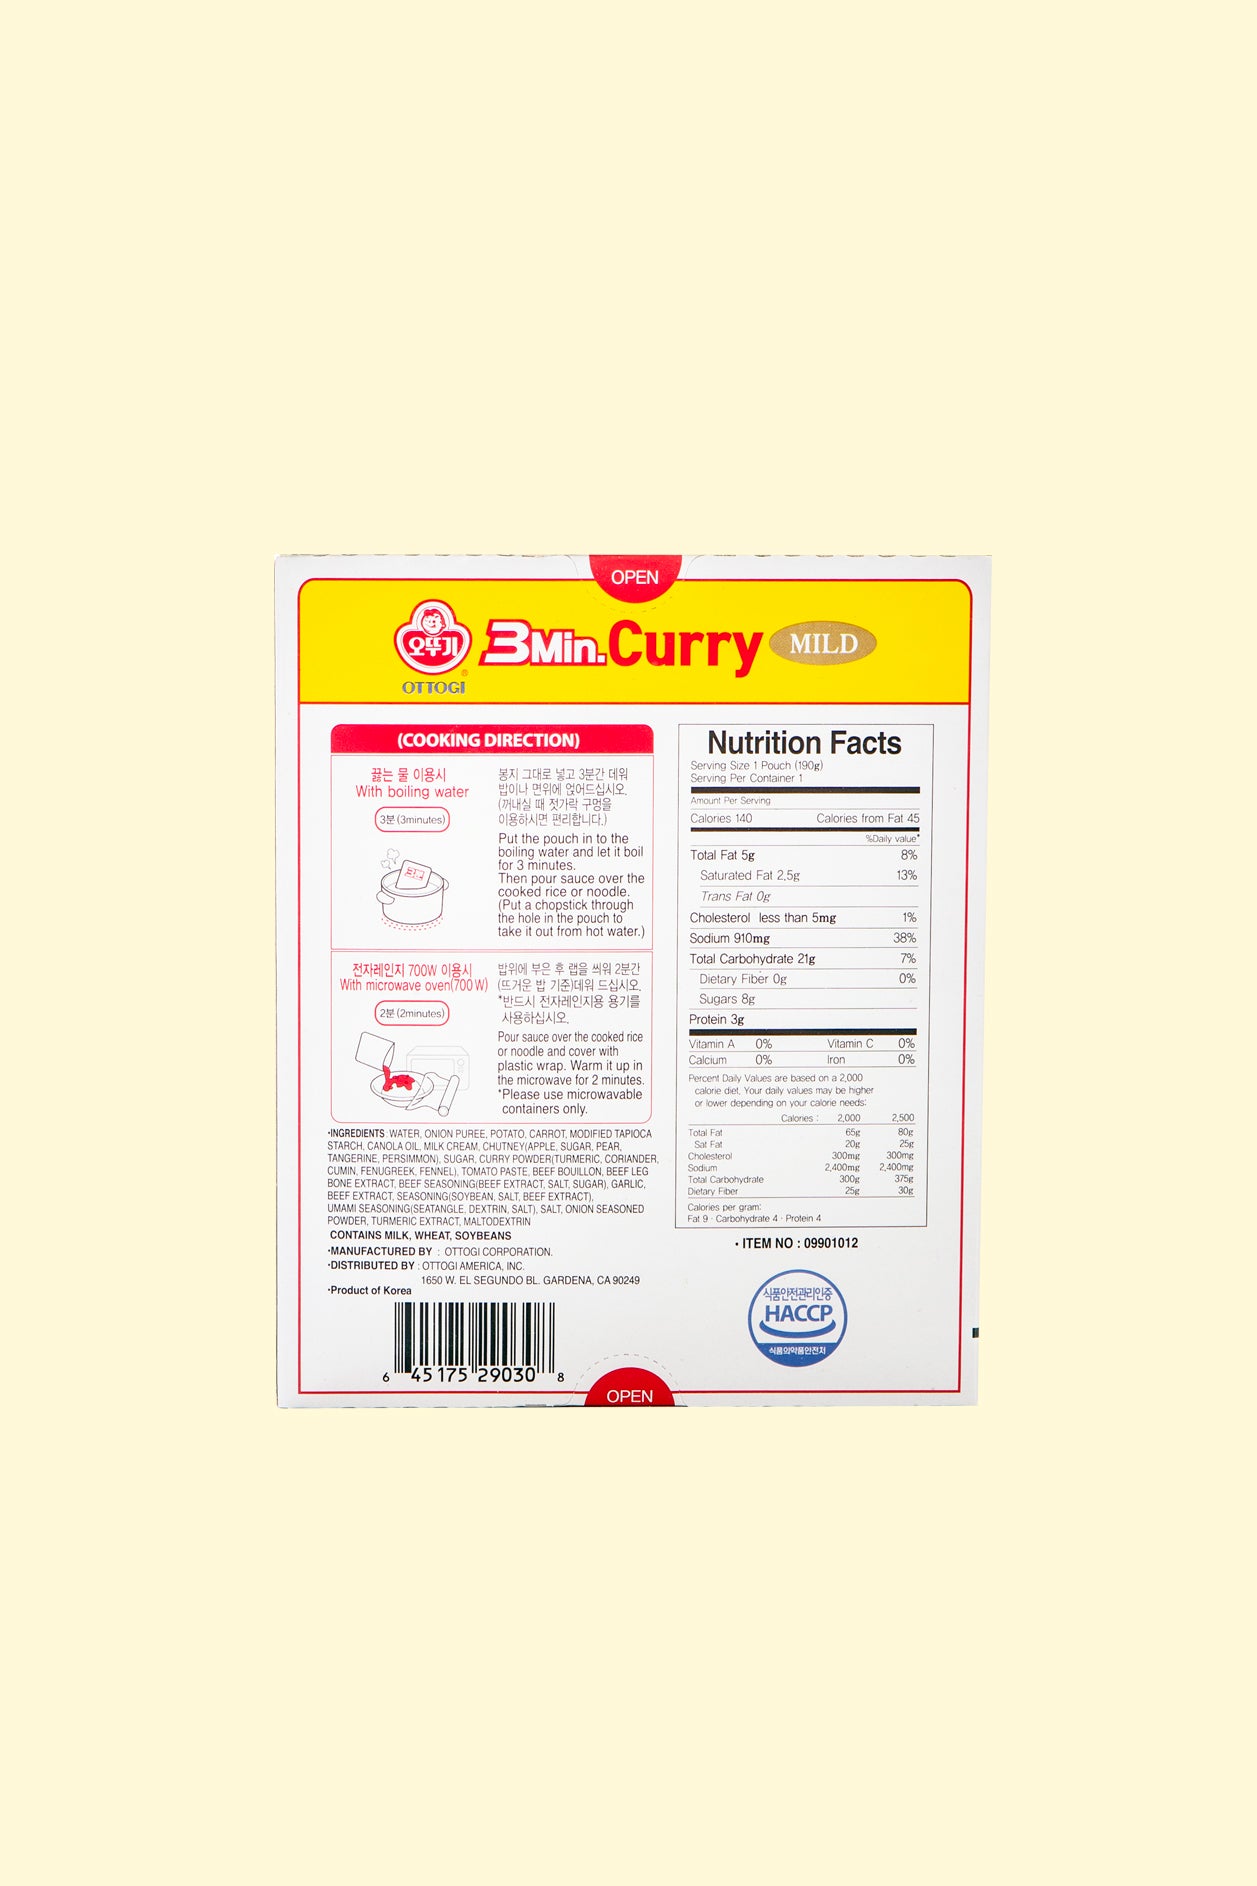 3 Min. Curry Sauce 190g